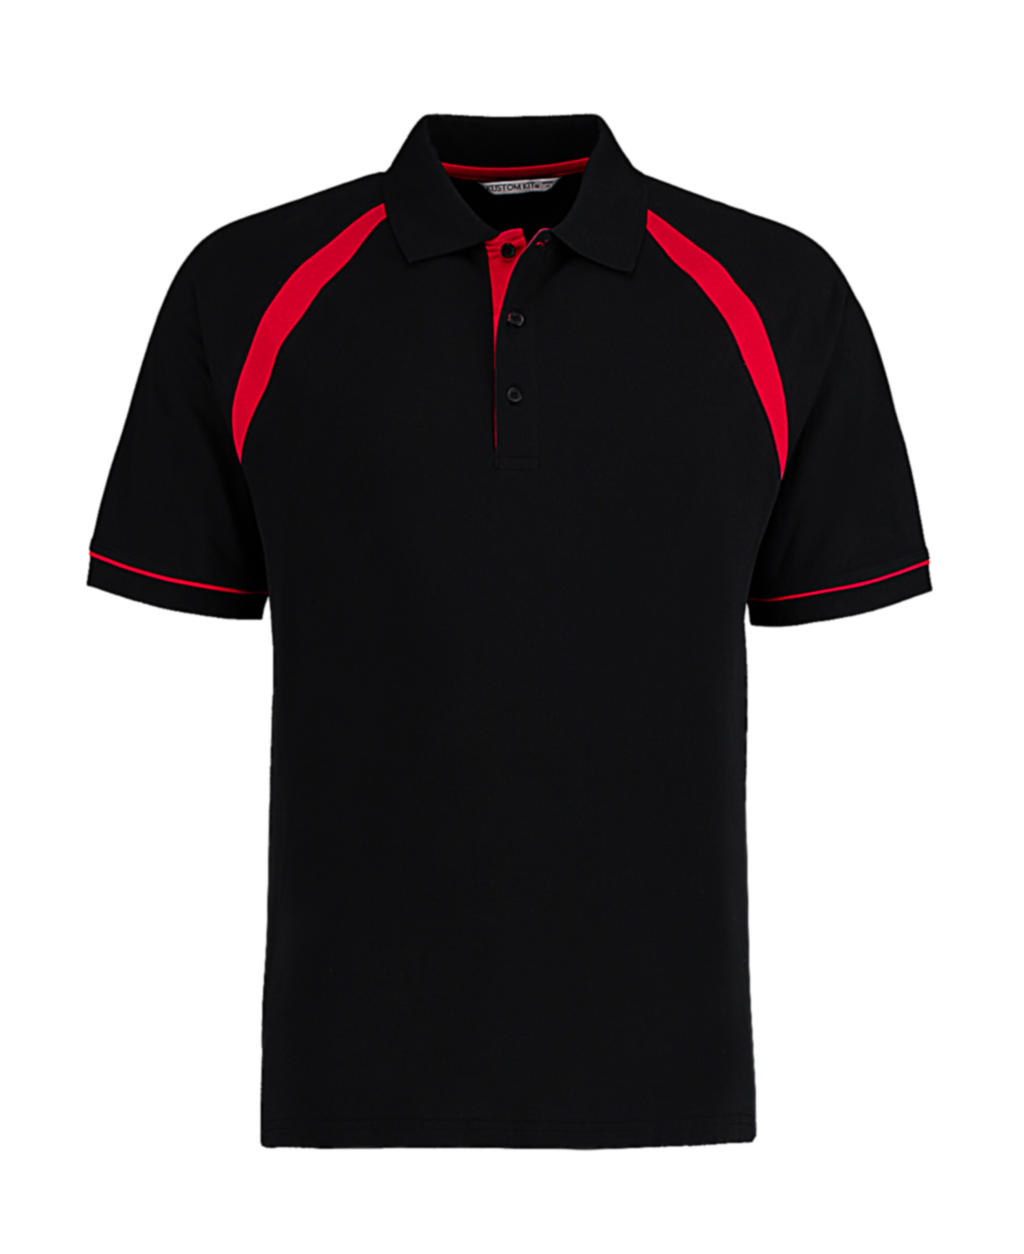  Classic Fit Oak Hill Polo in Farbe Black/Bright Red